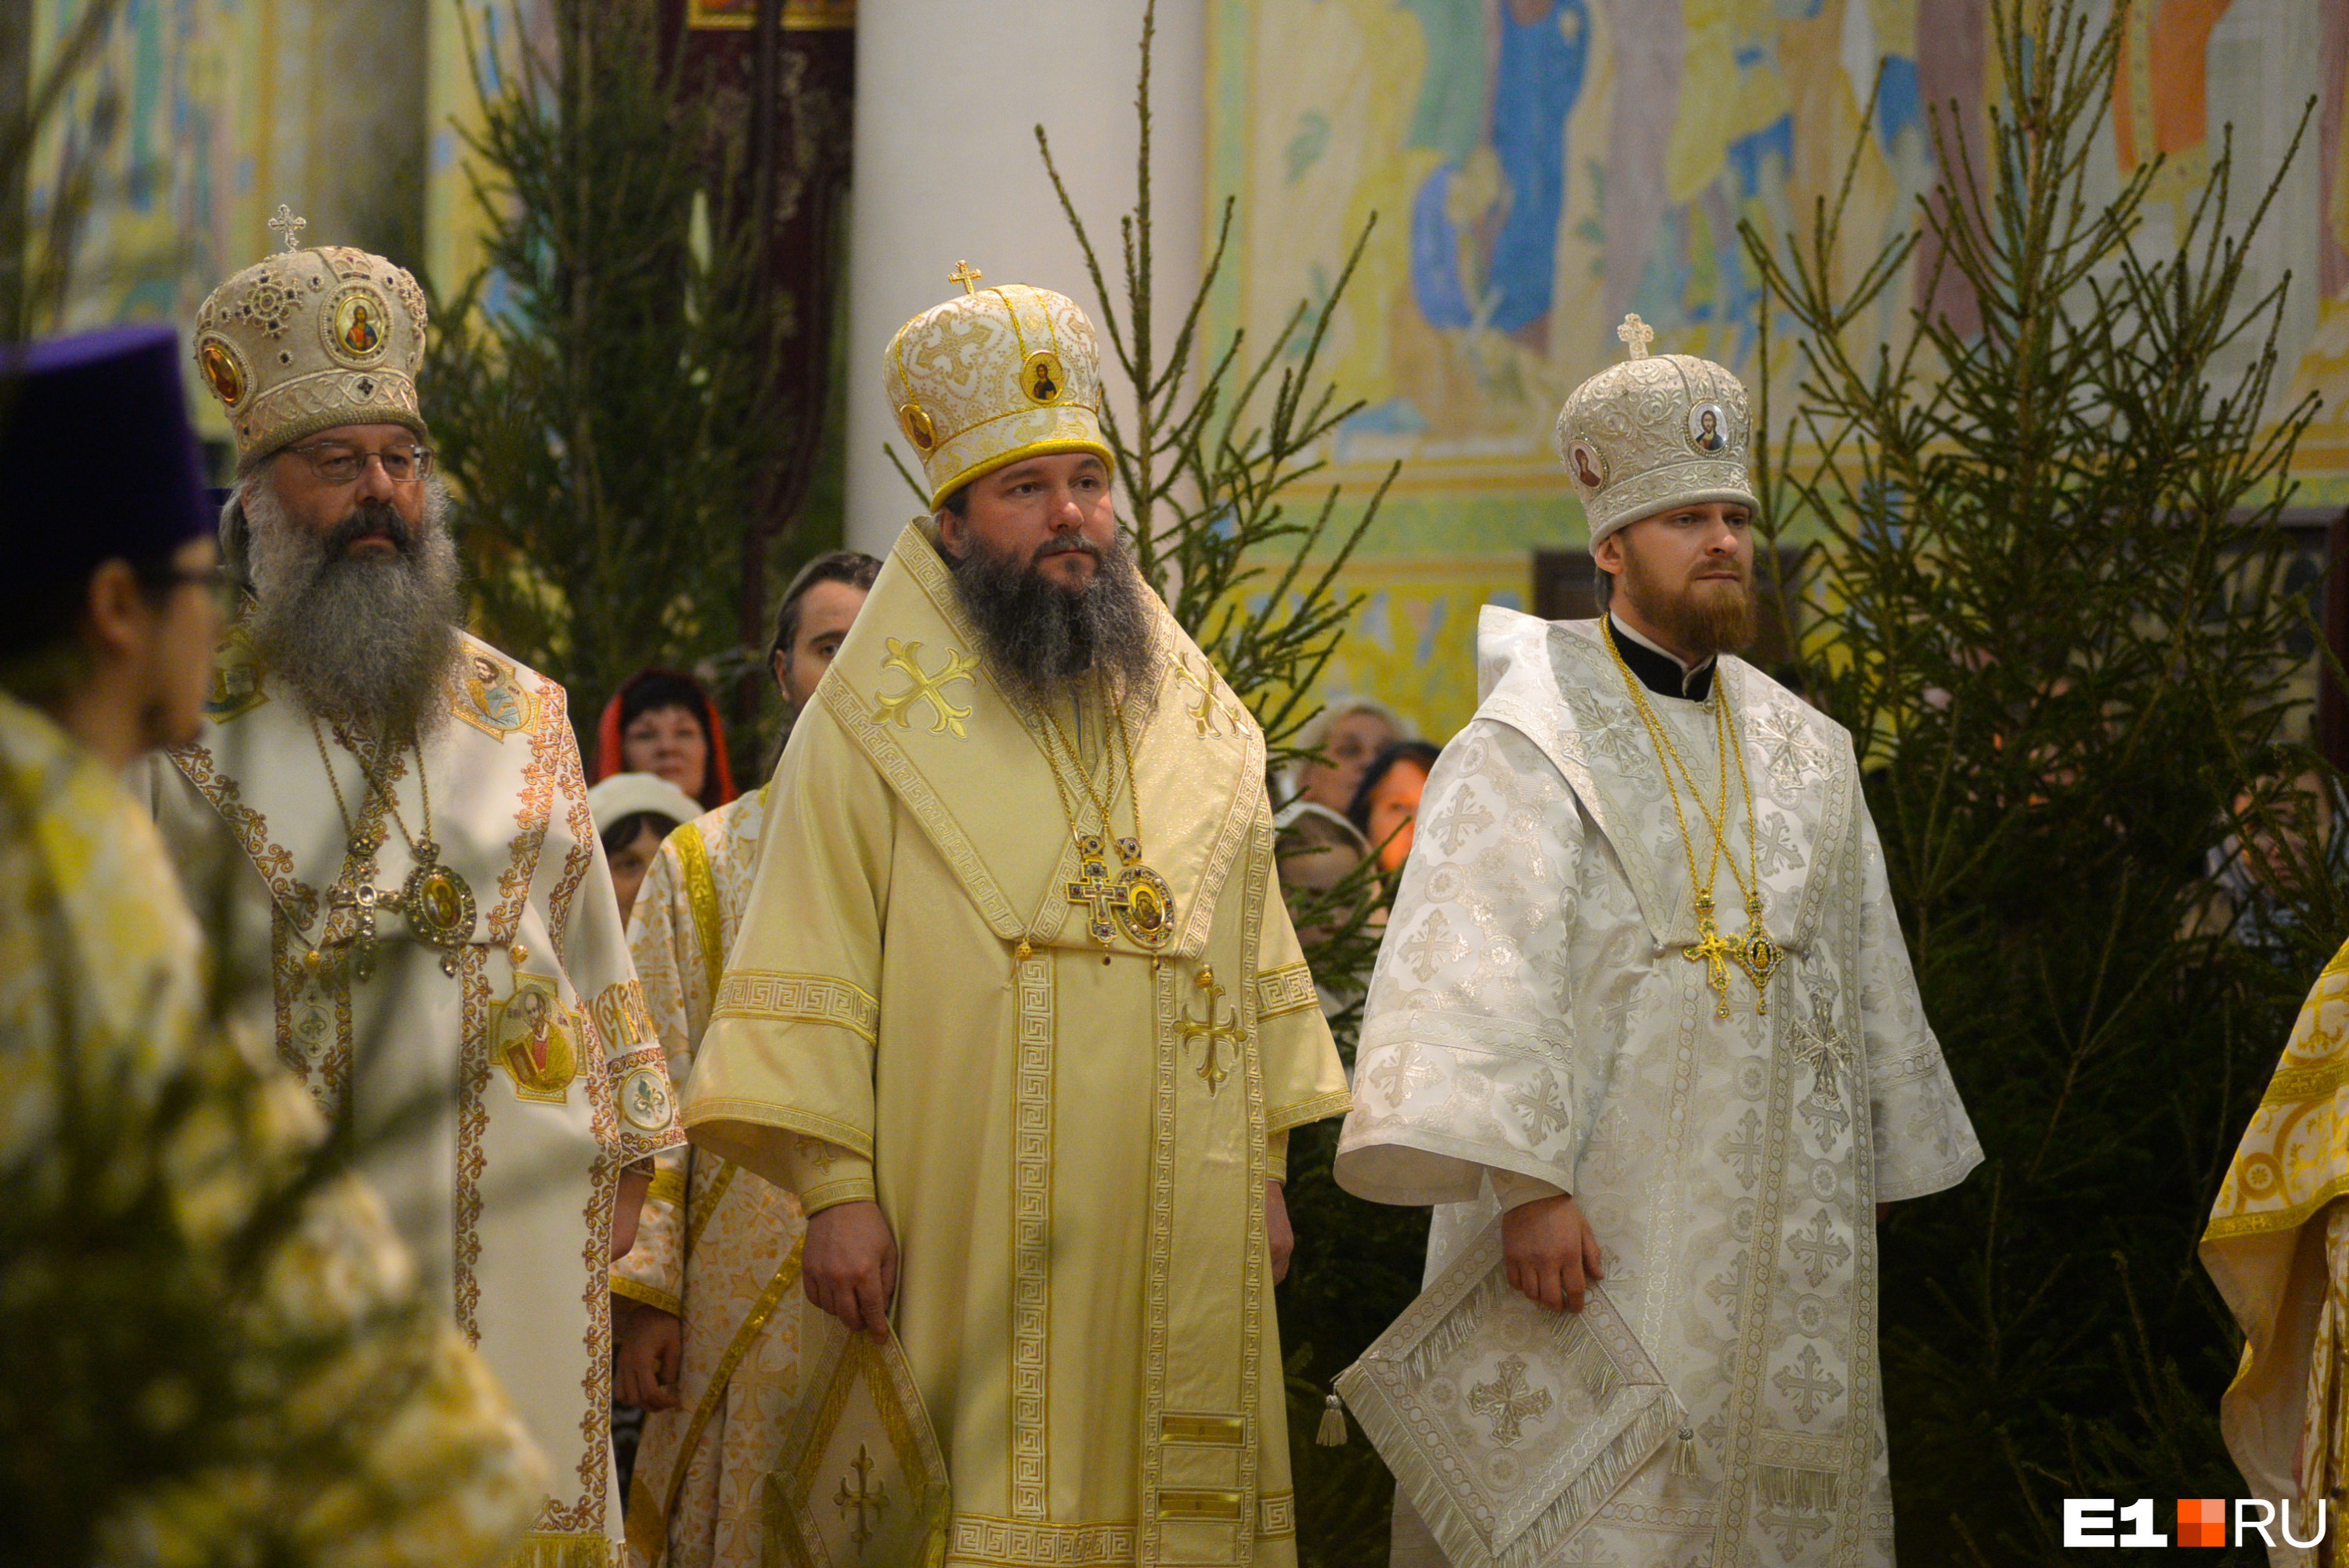 Митрополит Кирилл прилетел из Москвы вместе с новым епископом Алапаевским и Ирбитским Леонидом (на фото он крайний справа)